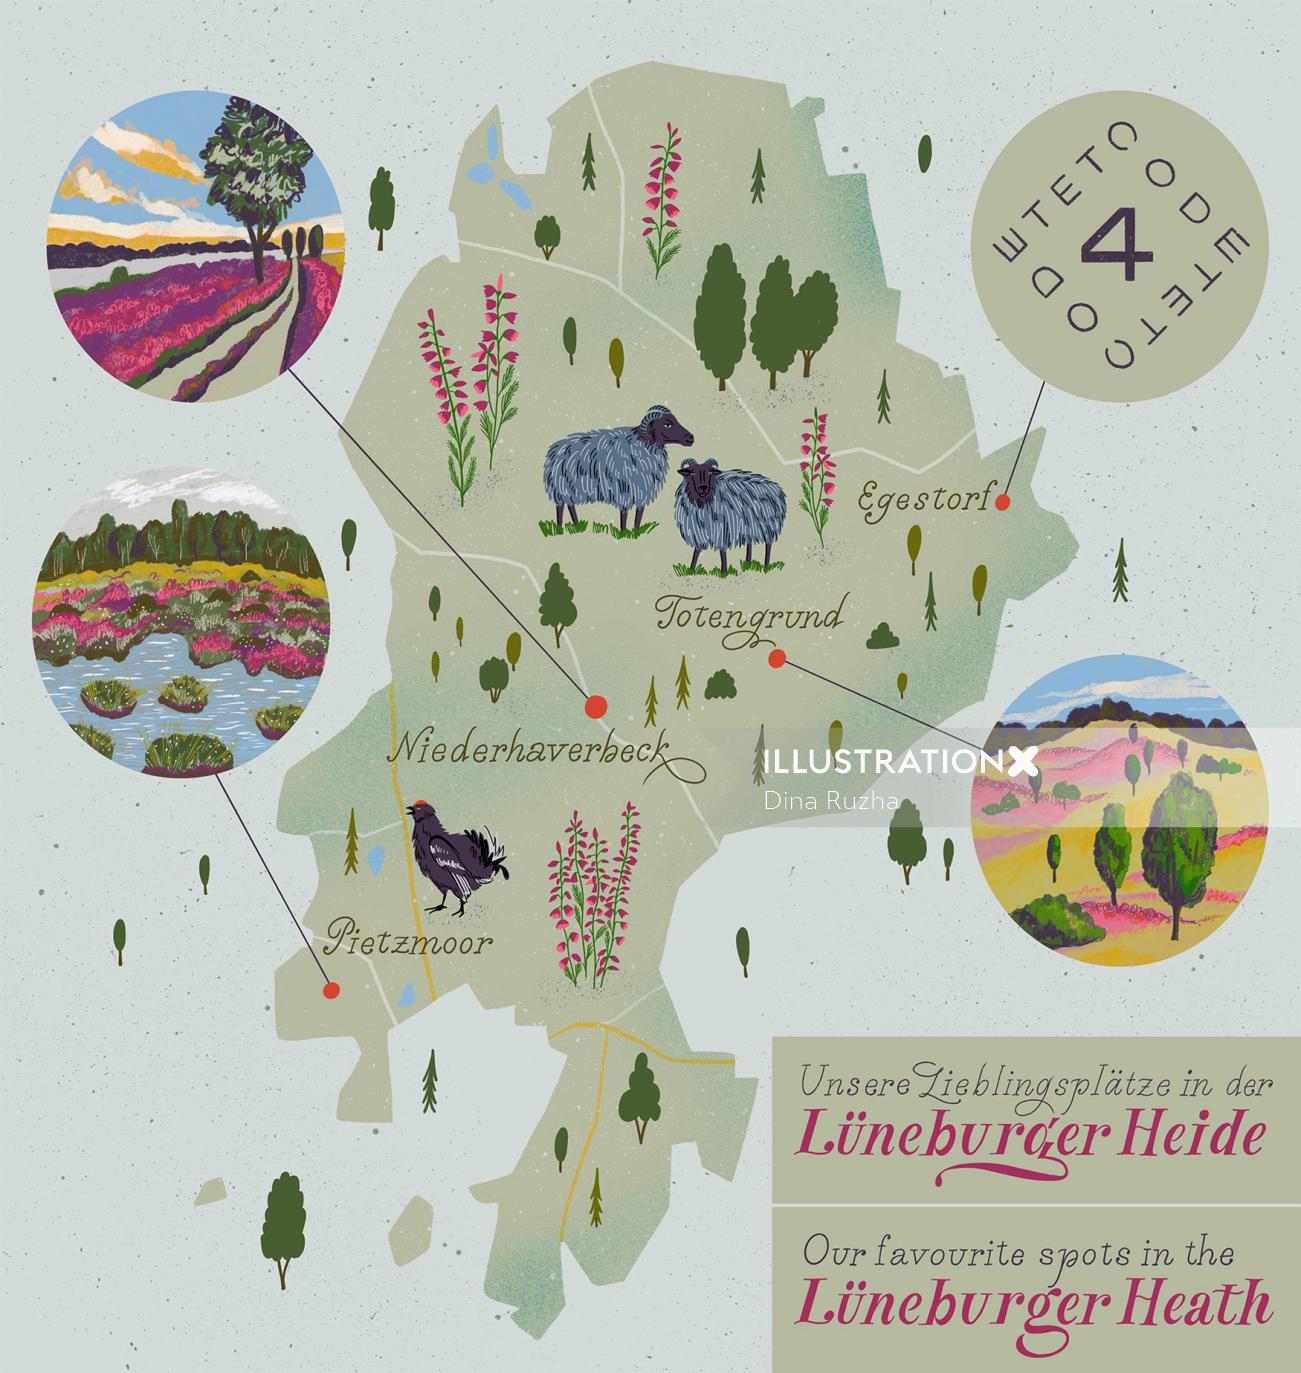 Mapa do Lüneburger Heide